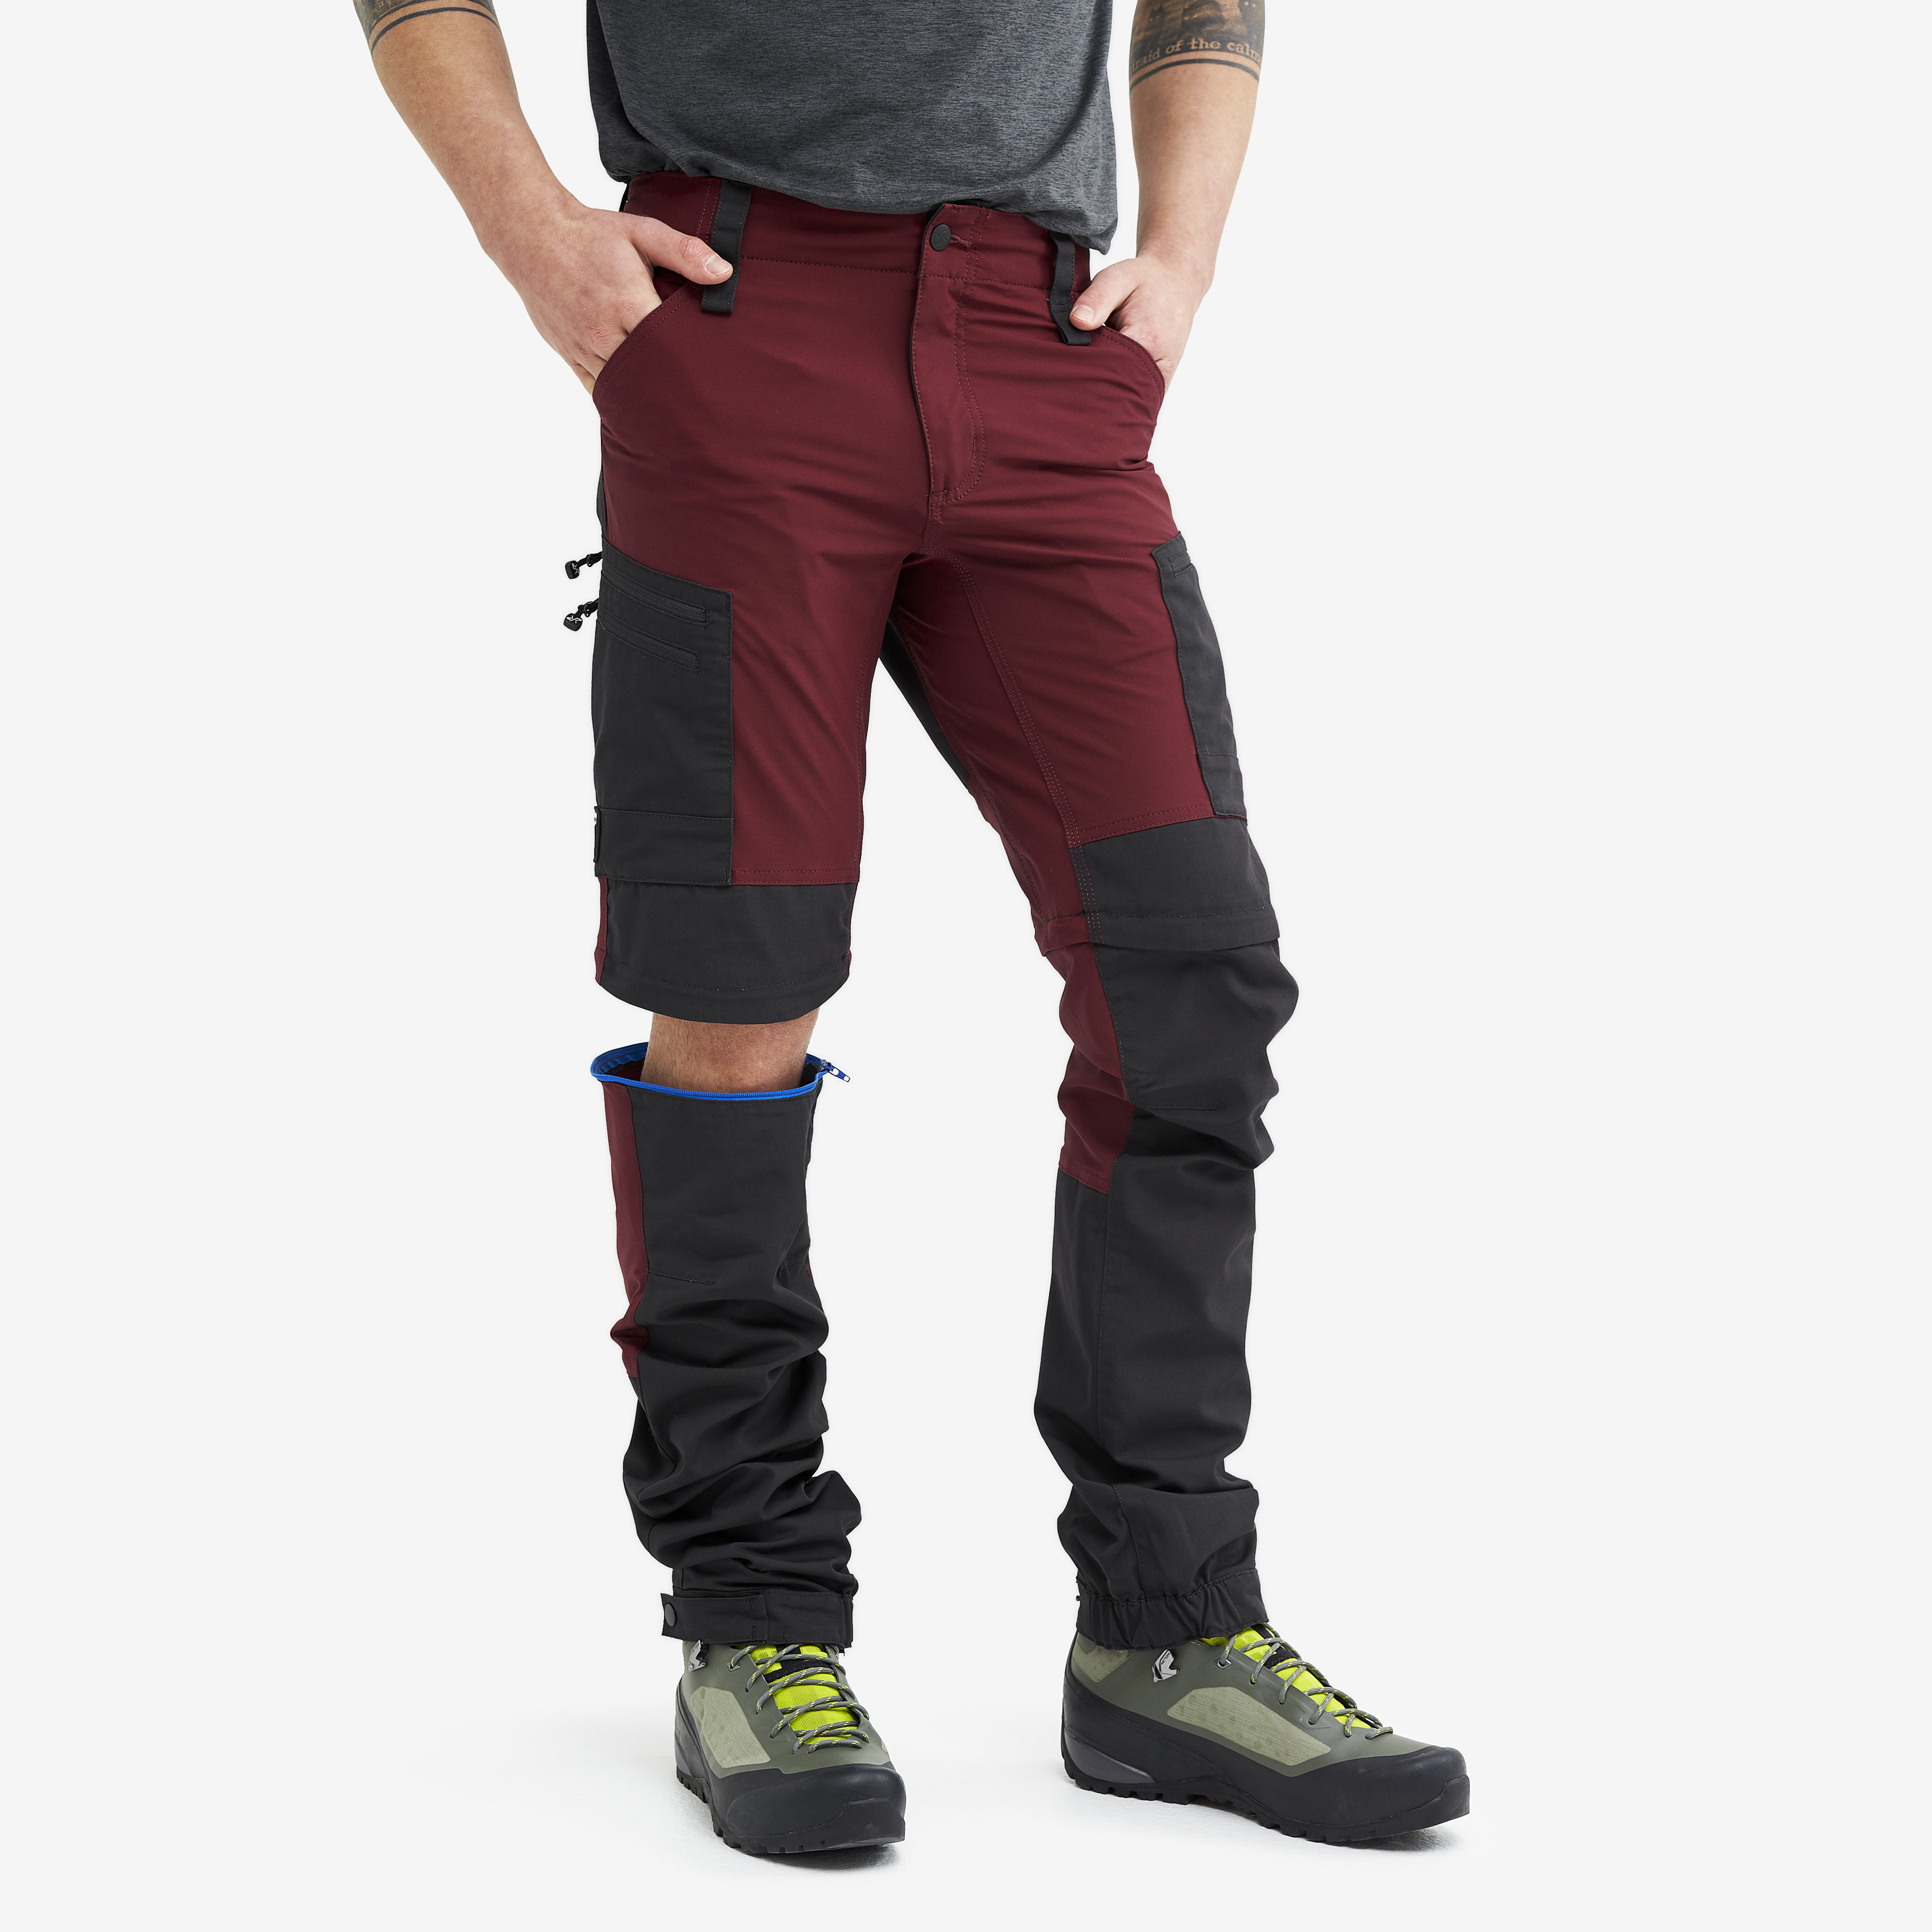 RVRC GP Pro Zip-off hiking pants for men in dark red